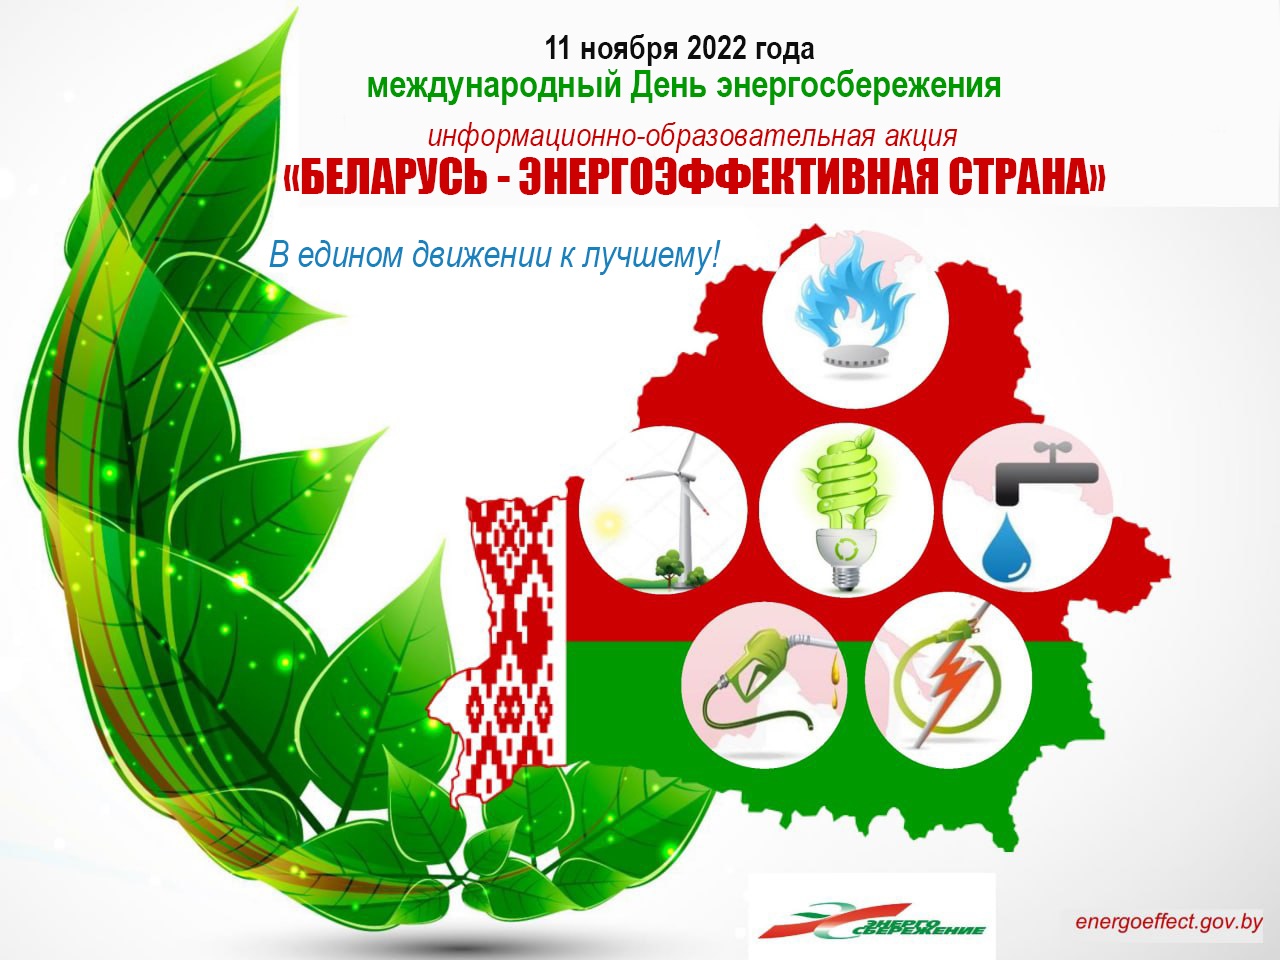 Международня День энергосбережения. Акция Беларусь-энергоэффективная страна